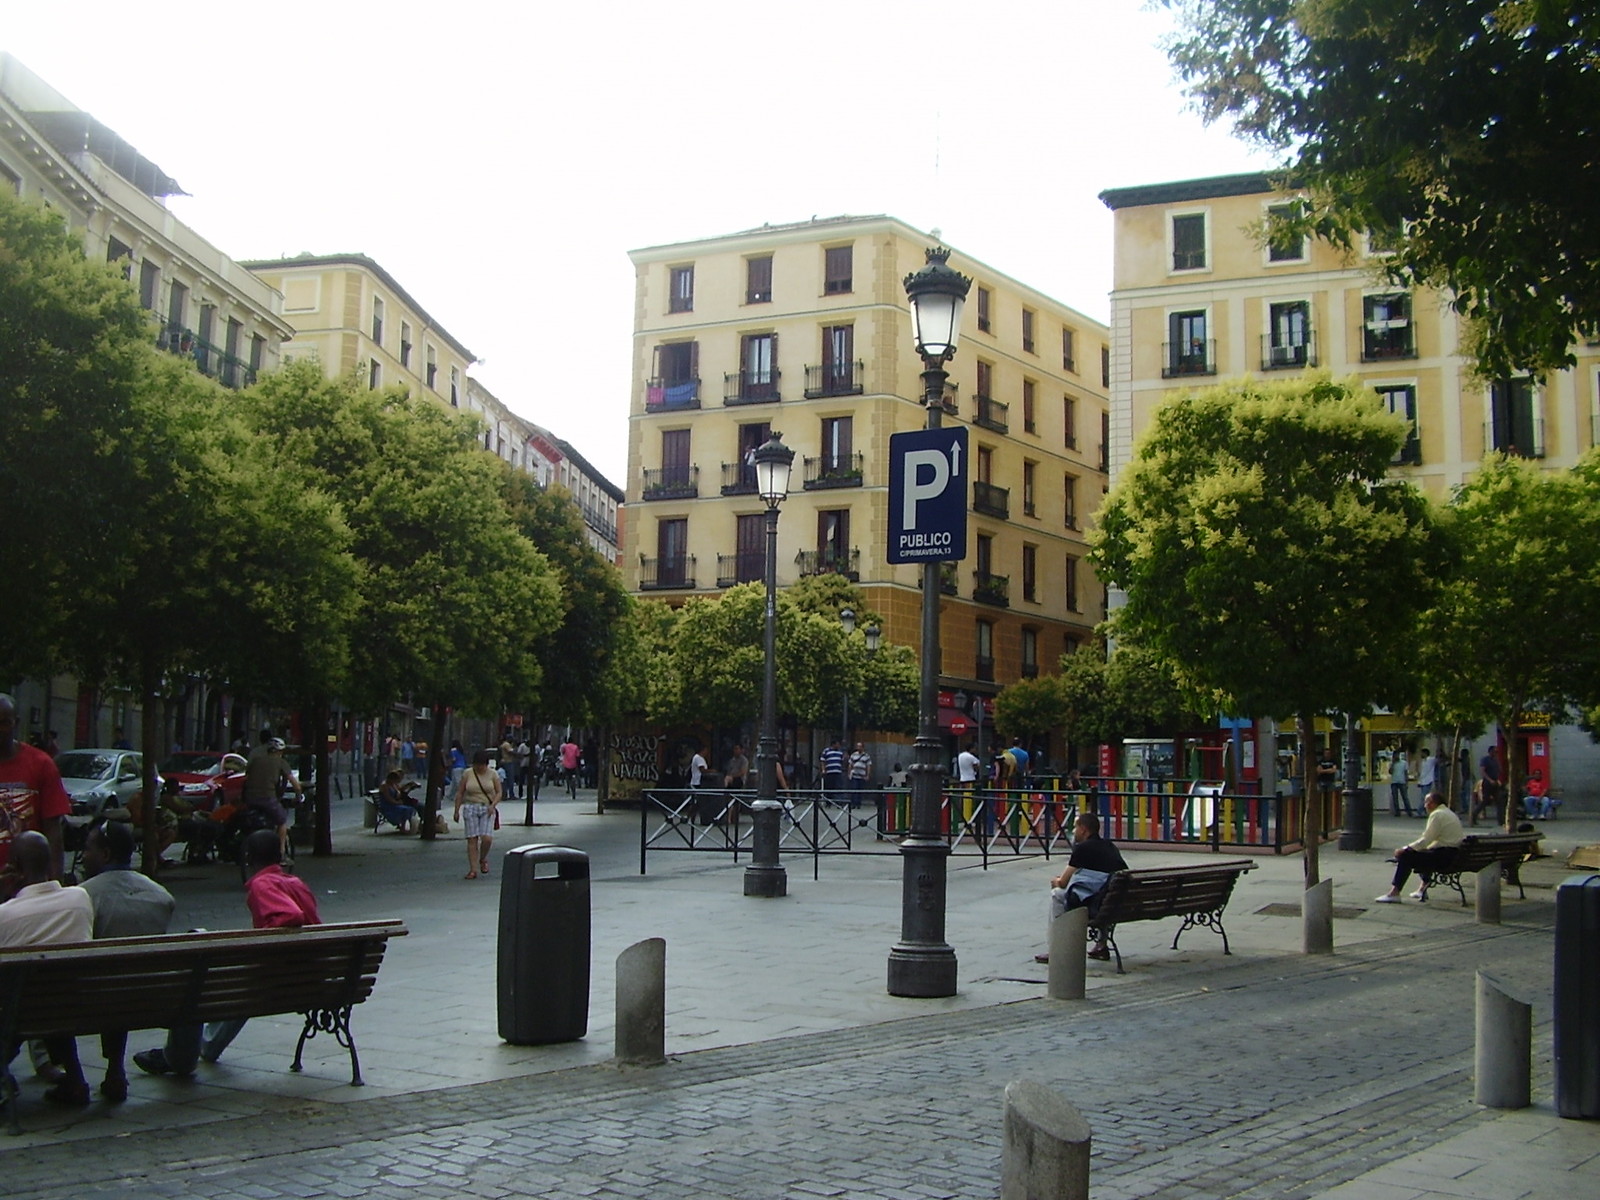 ¿Dejará Chueca de ser el barrio gay de Madrid?